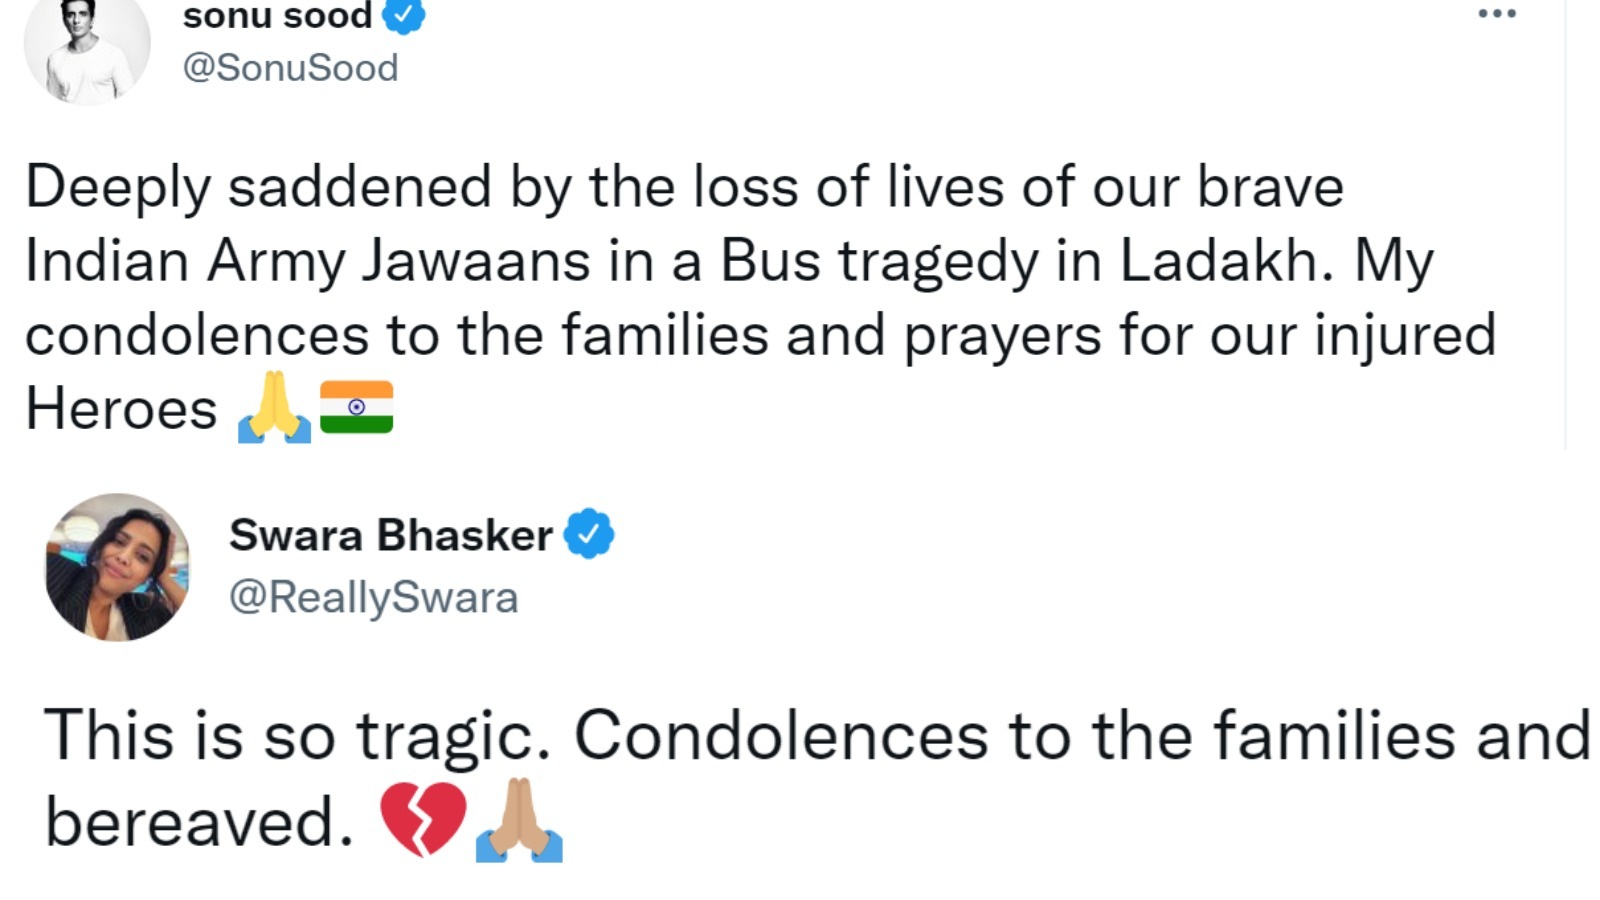 Sonu Sood and Swara Bhasker's tweet.